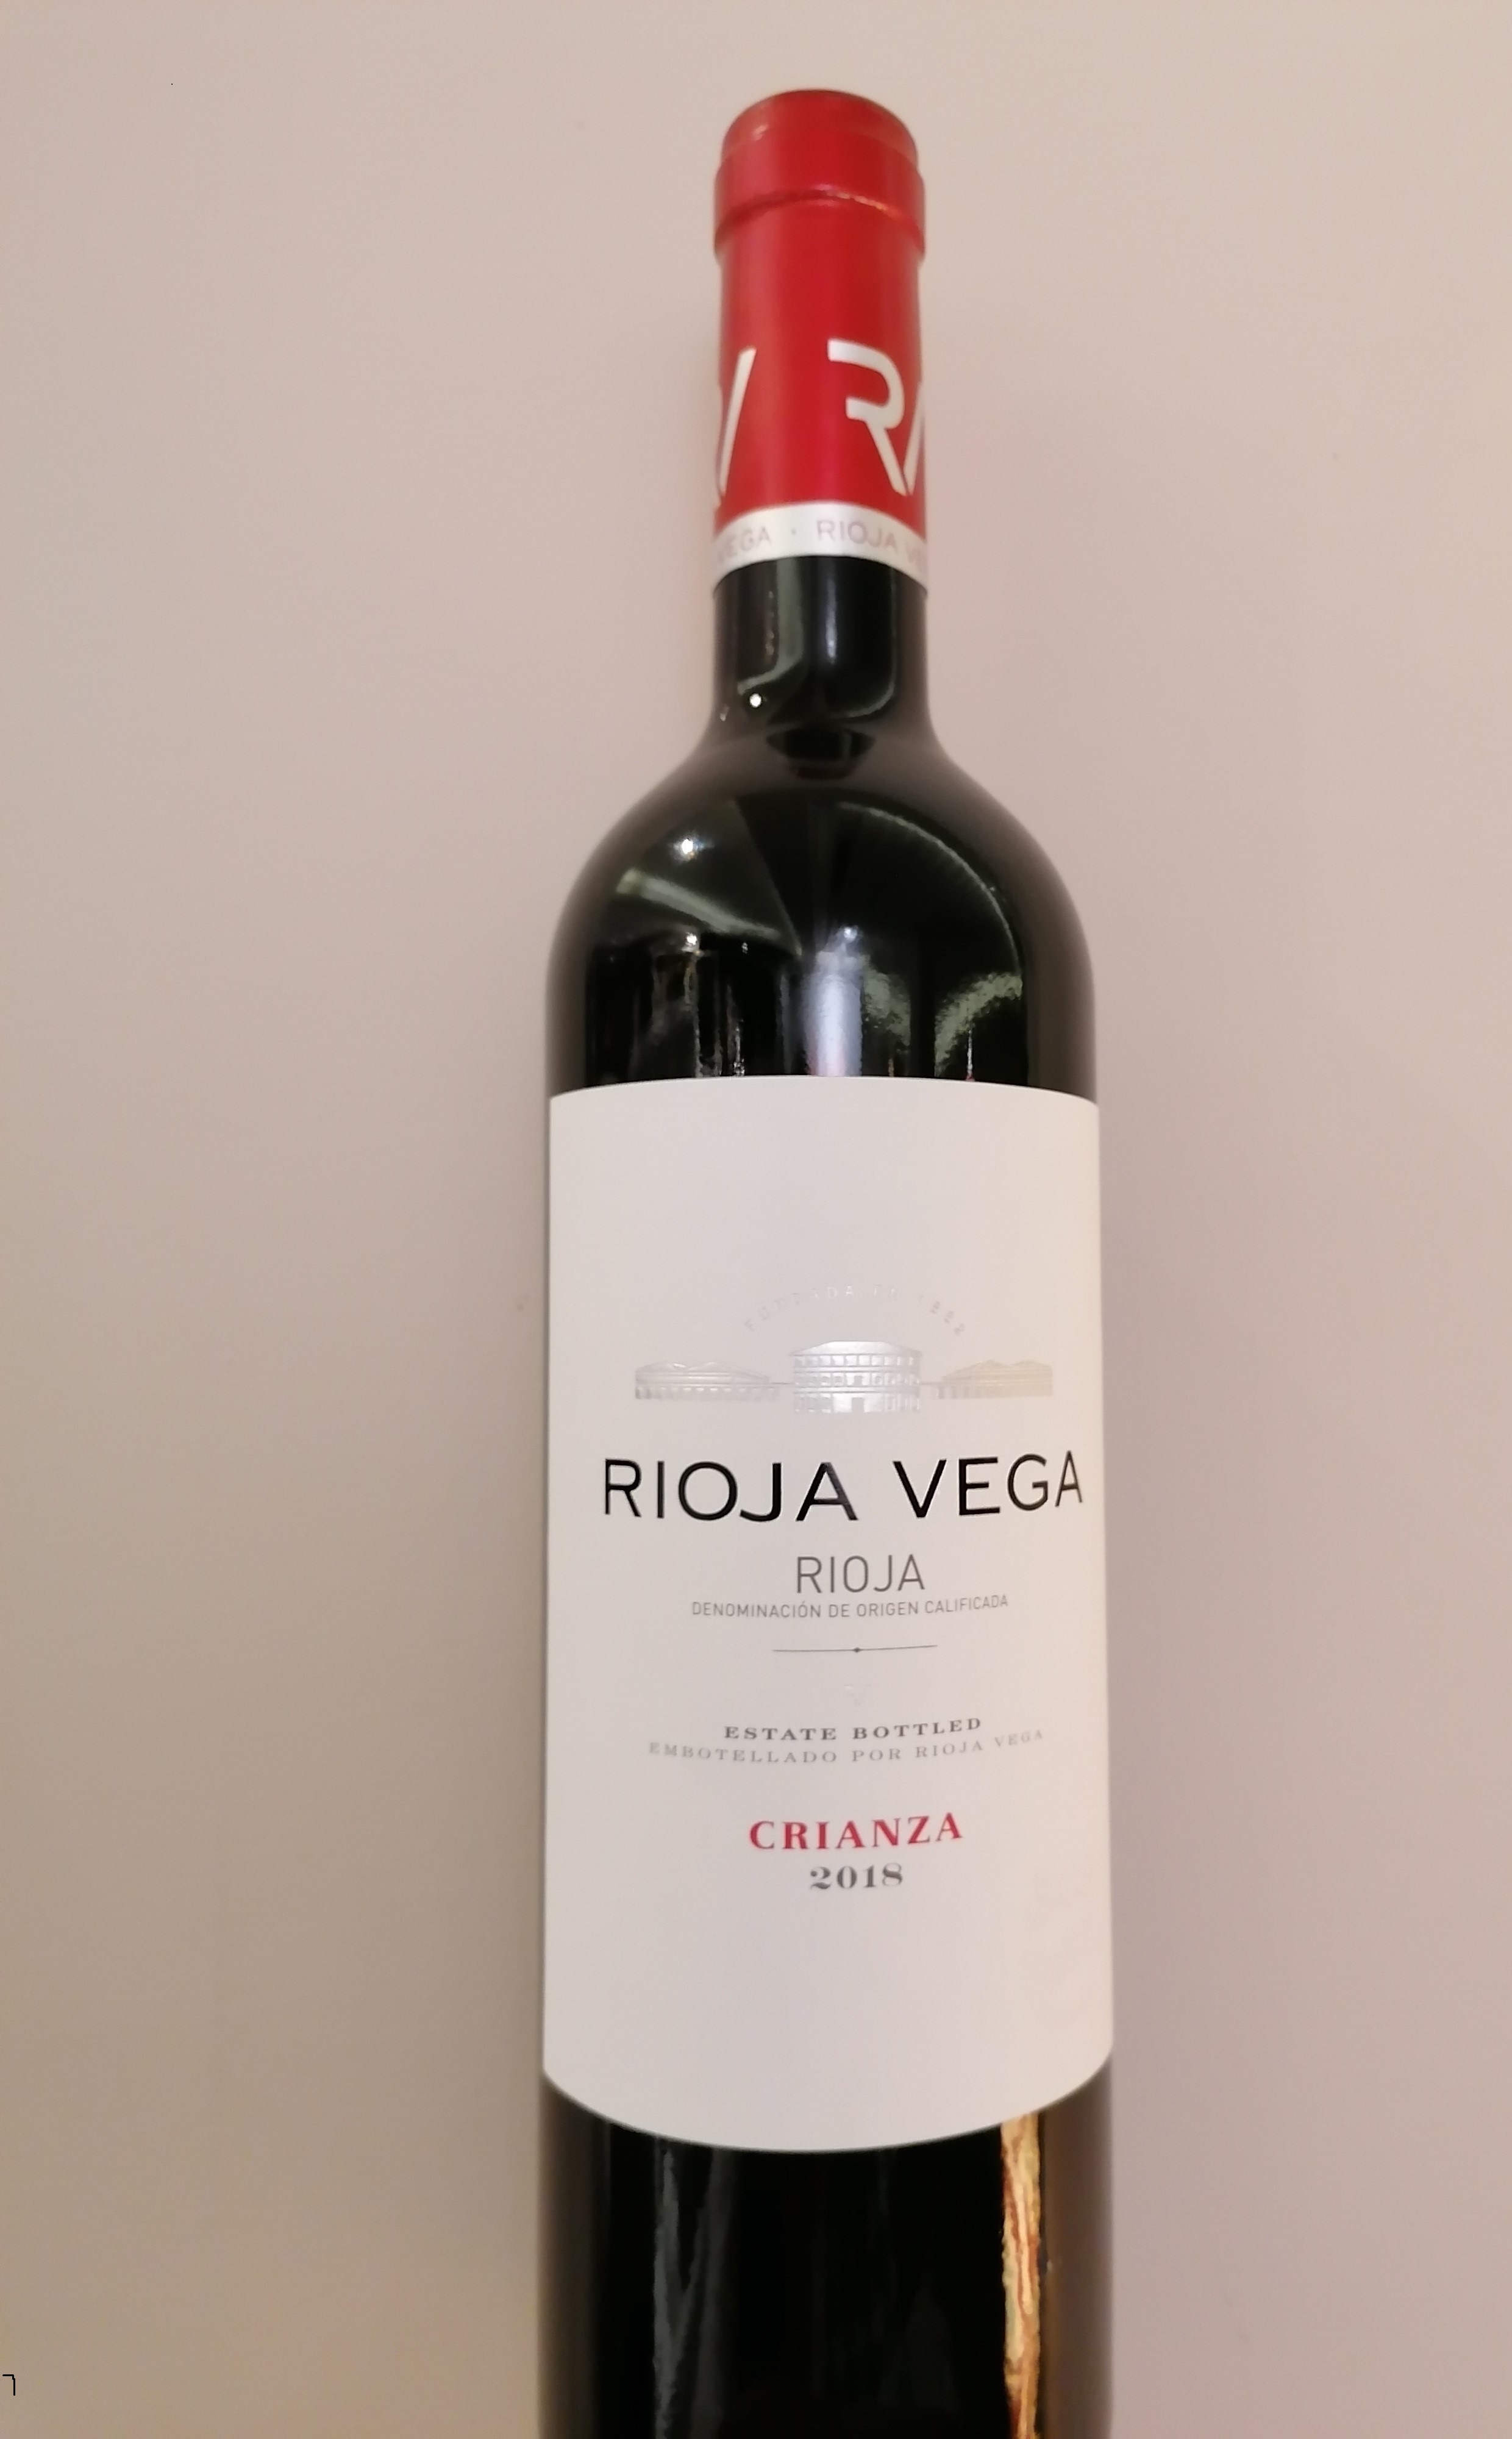 Rioja Vega crianza (House recommendation)